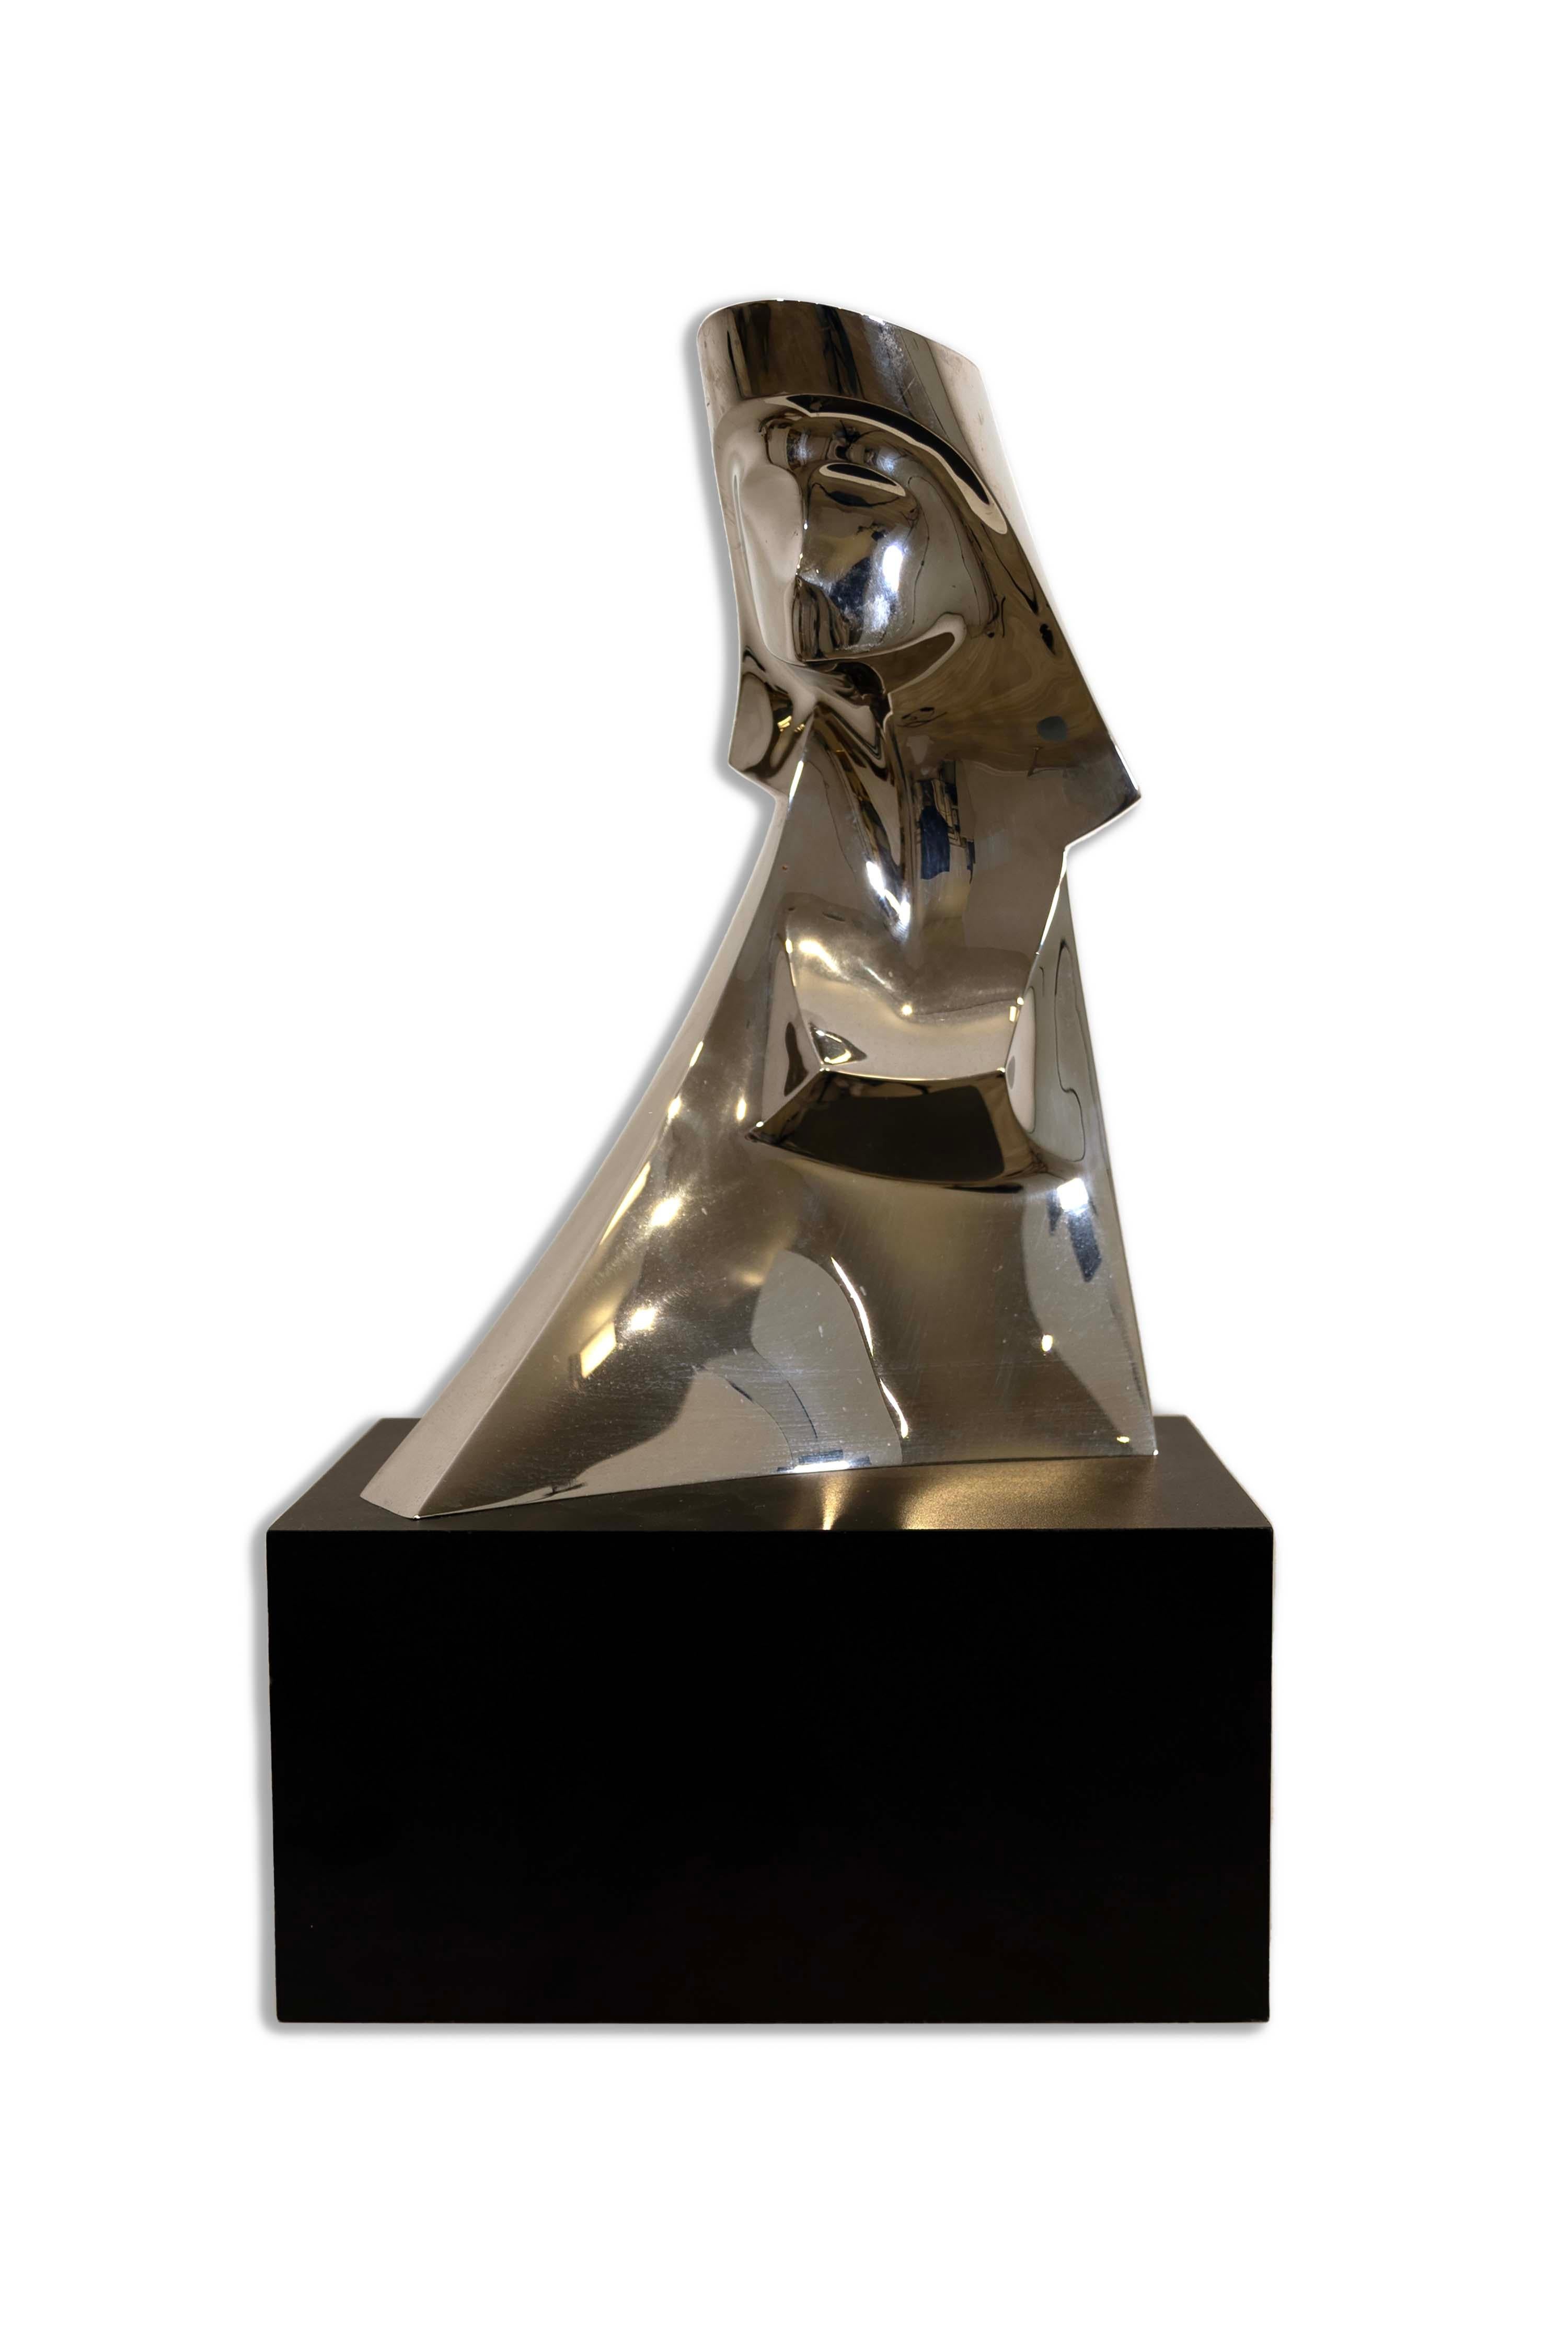 Découvrez l'attrait du minimalisme moderne avec la sculpture Sphinx en aluminium de Gary Slater. Cette pièce,  présente une surface lisse et réfléchissante qui joue avec l'ombre et la lumière, créant une danse visuelle envoûtante. Parfait pour les